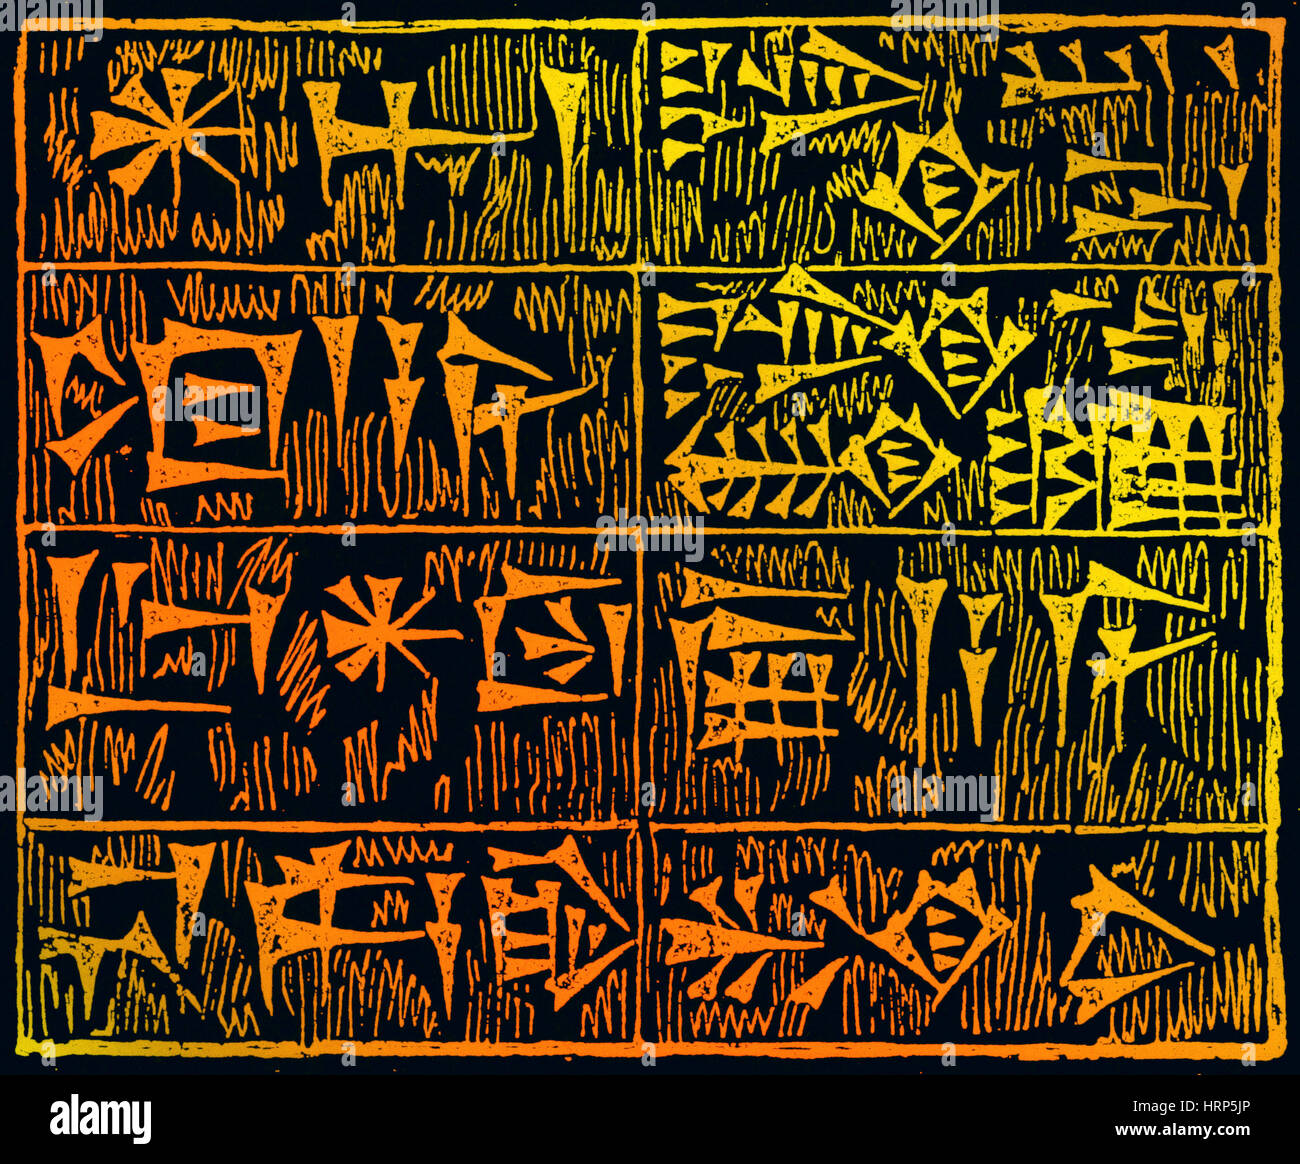 Caratteri cuneiformi Foto Stock